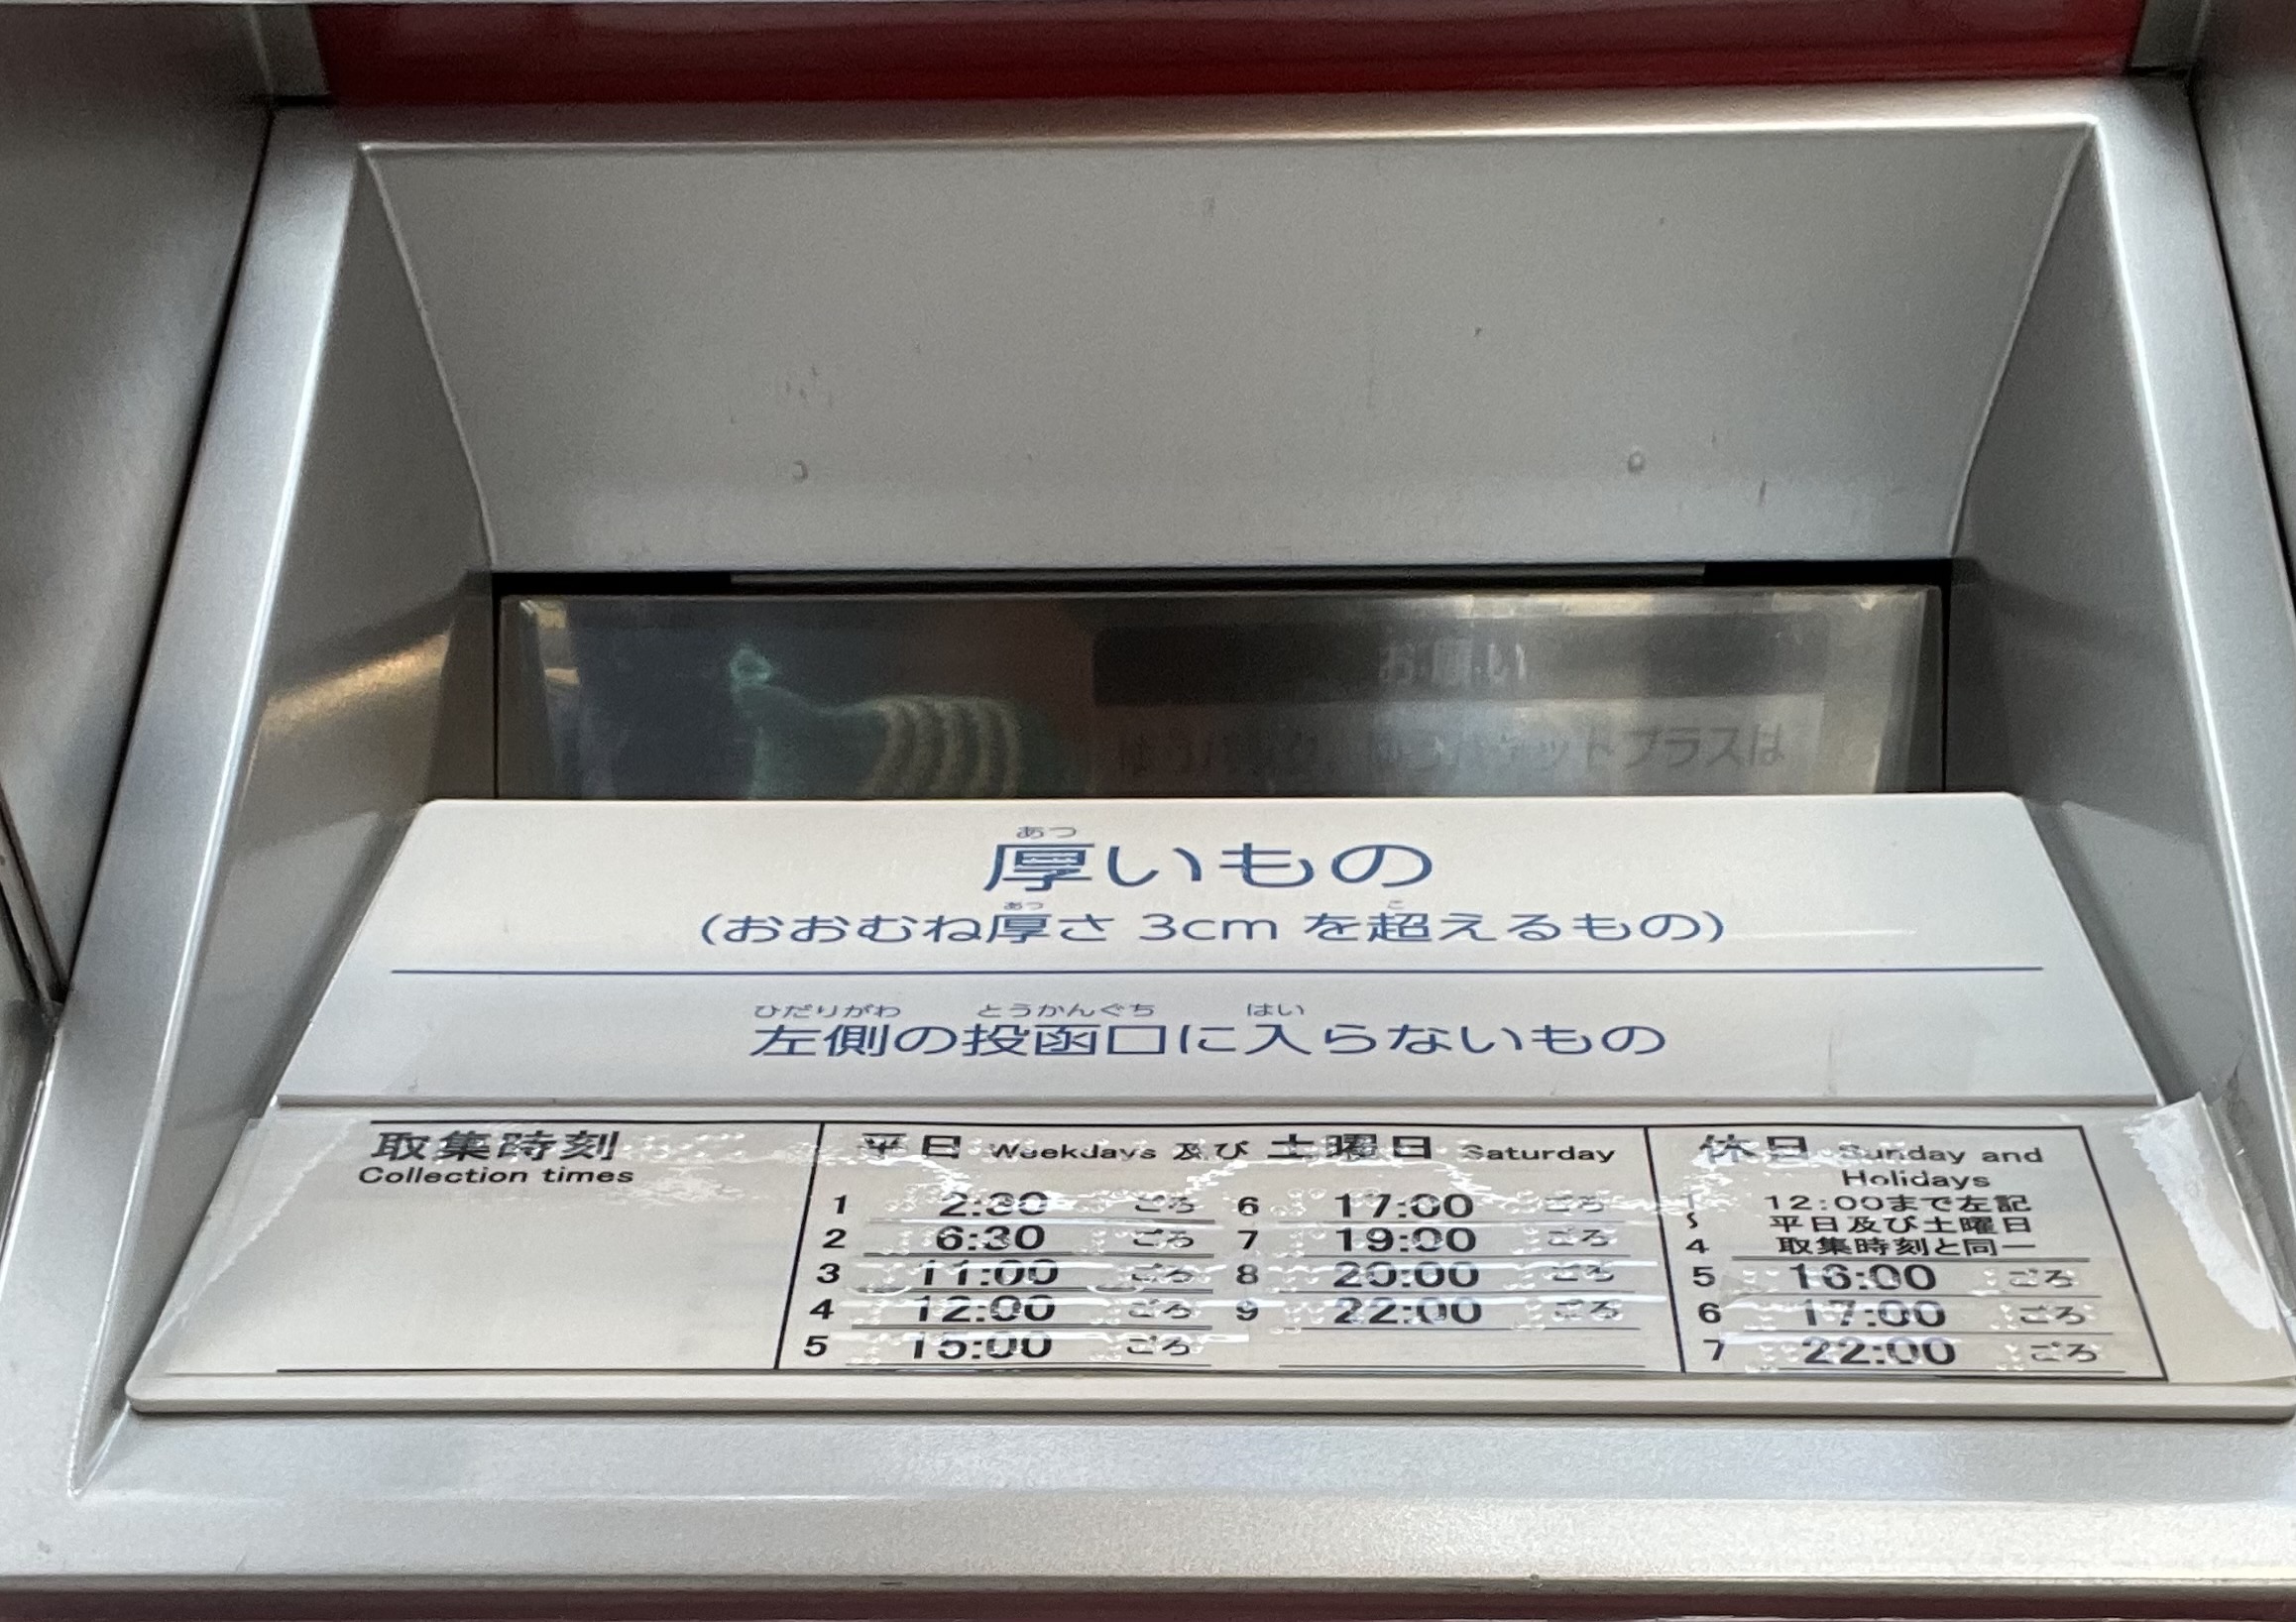 世田谷郵便局の新型7cm厚対応郵便ポスト(7cm厚対応投函口アップ)